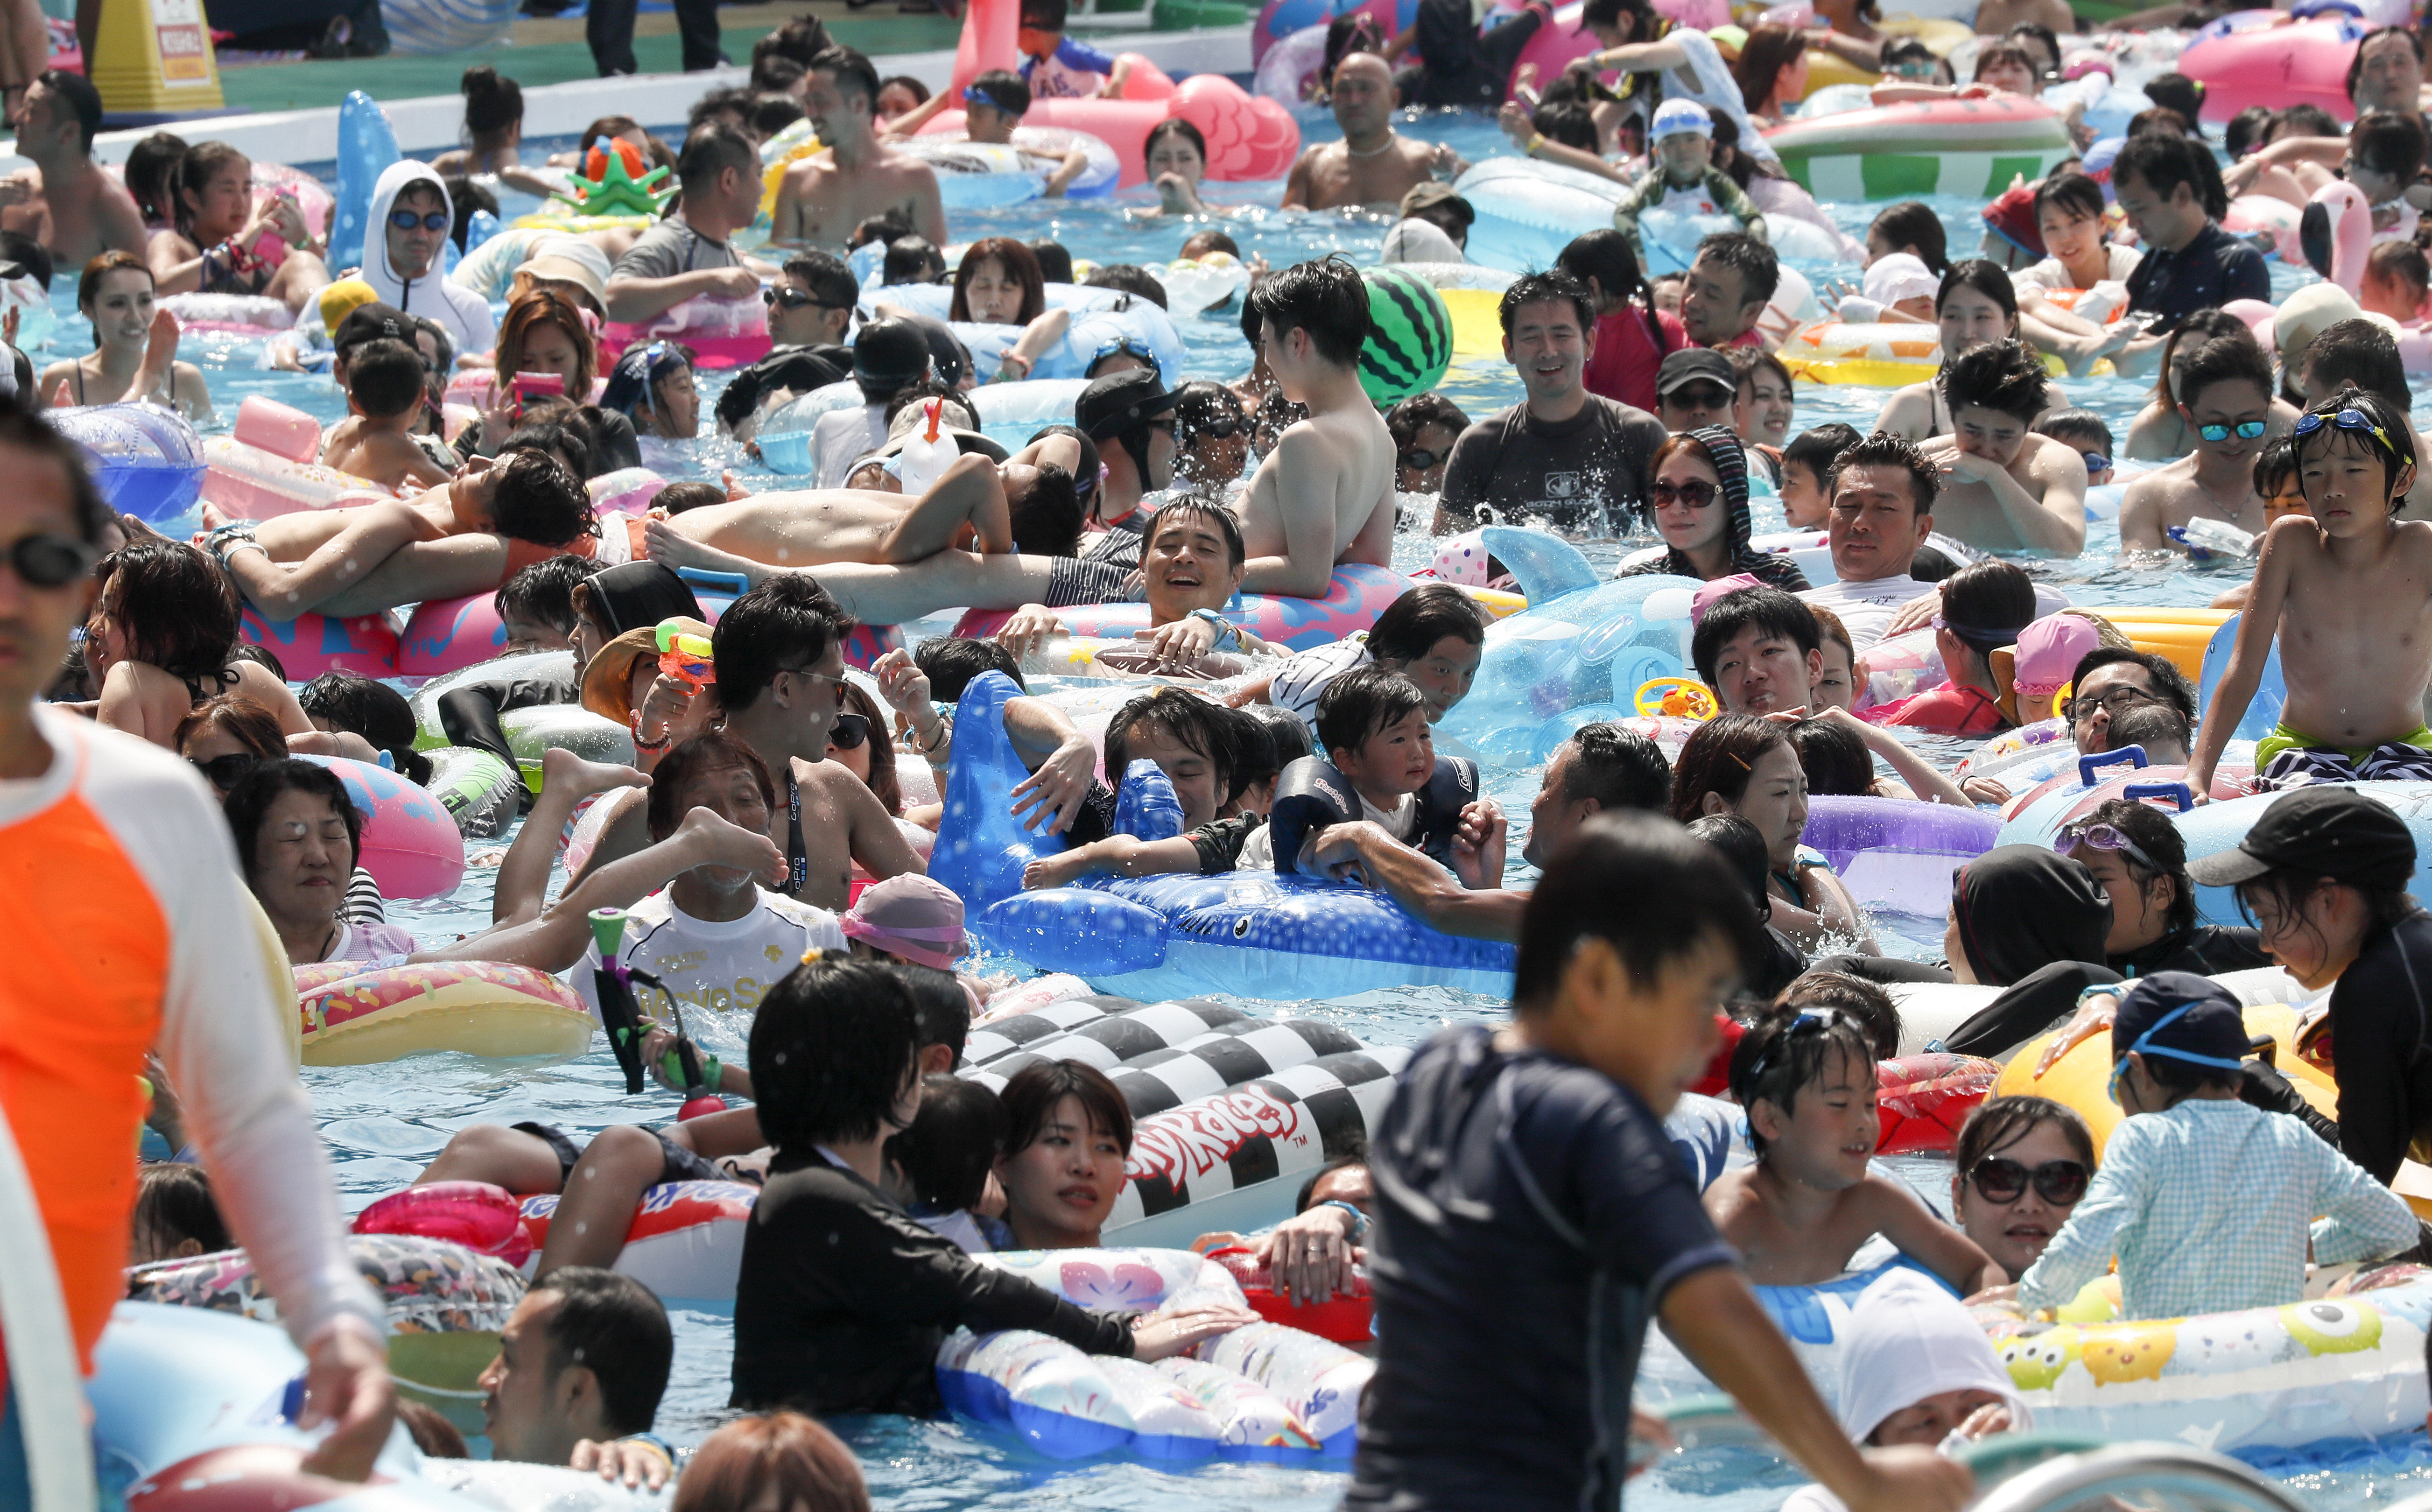 Гореща вълна премина през Япония. Температурите в някои части на страната достигнаха над 39 градуса по Целзий, което в съчетание с високата влажност създаде опасни условия, посочва японската метеорологична служба.

Много хора потърсиха спасение от жегите край най-близкия басейн.